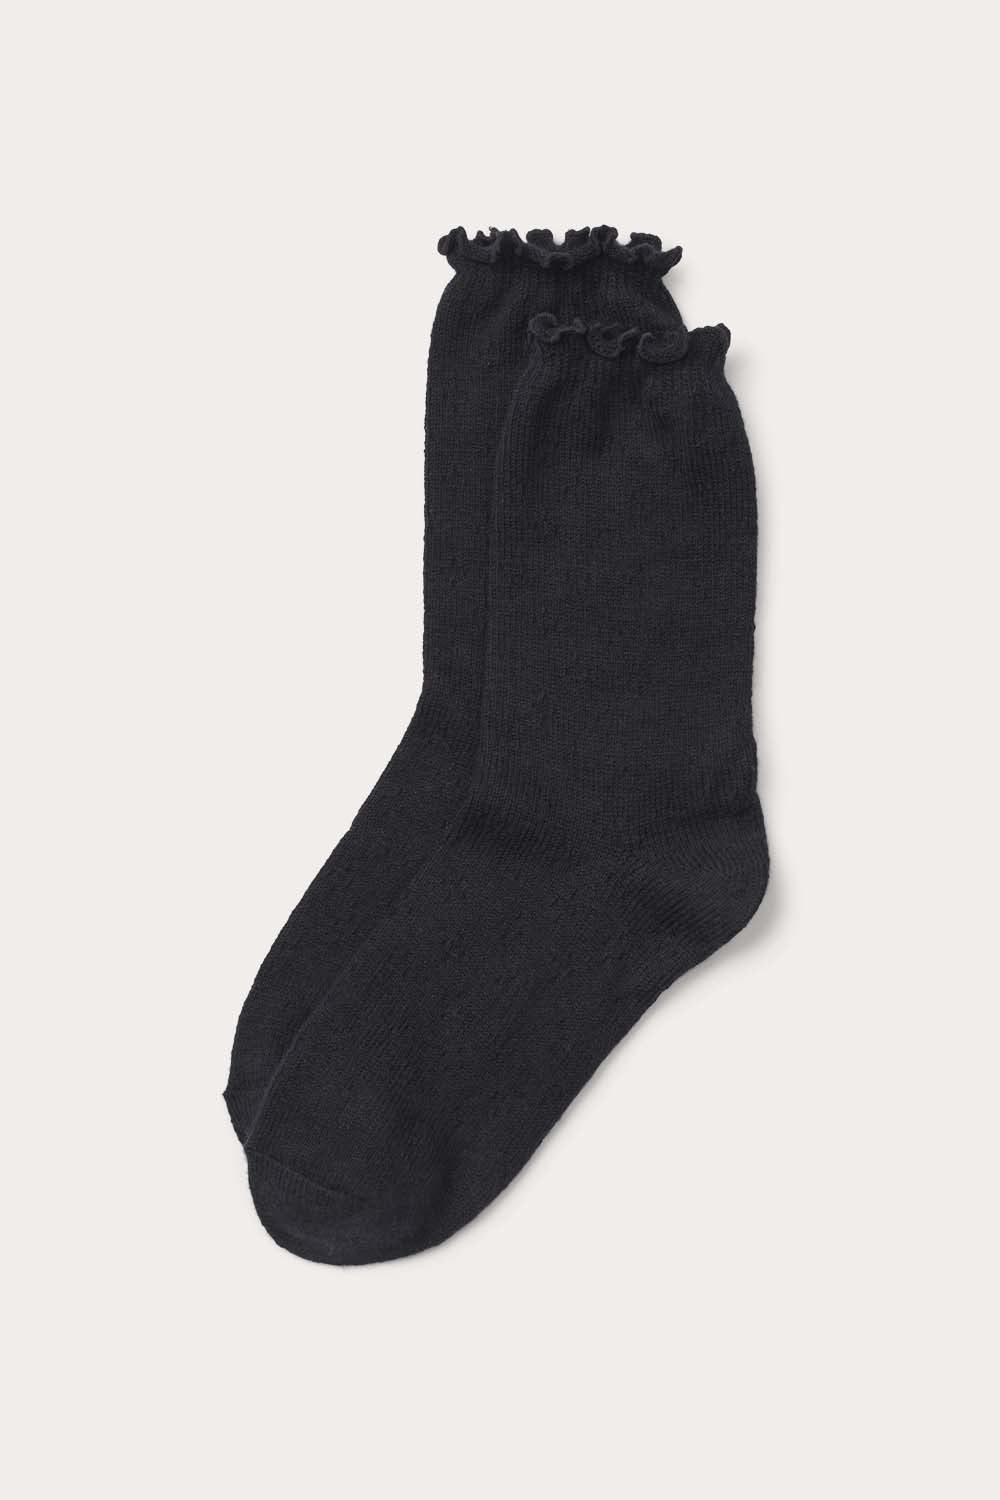 O'TAY Fawn Socks Socks Black